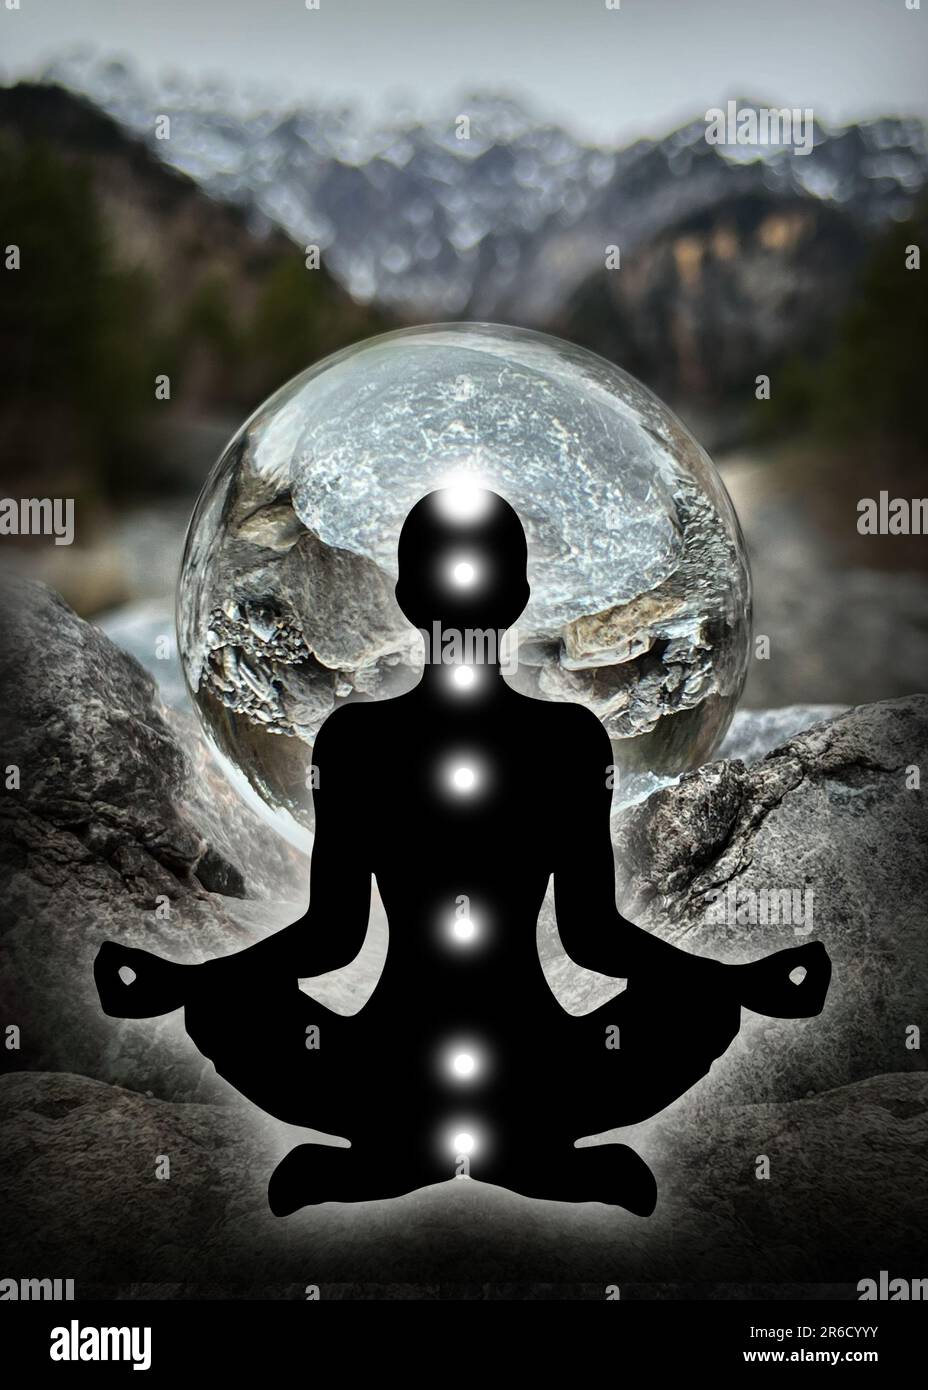 Silhouette humaine en yoga, pose de lotus (corps énergétique humain, aura) devant le lansball, boule de cristal (ruisseau/paysage alpin autrichien, Montafon) Banque D'Images